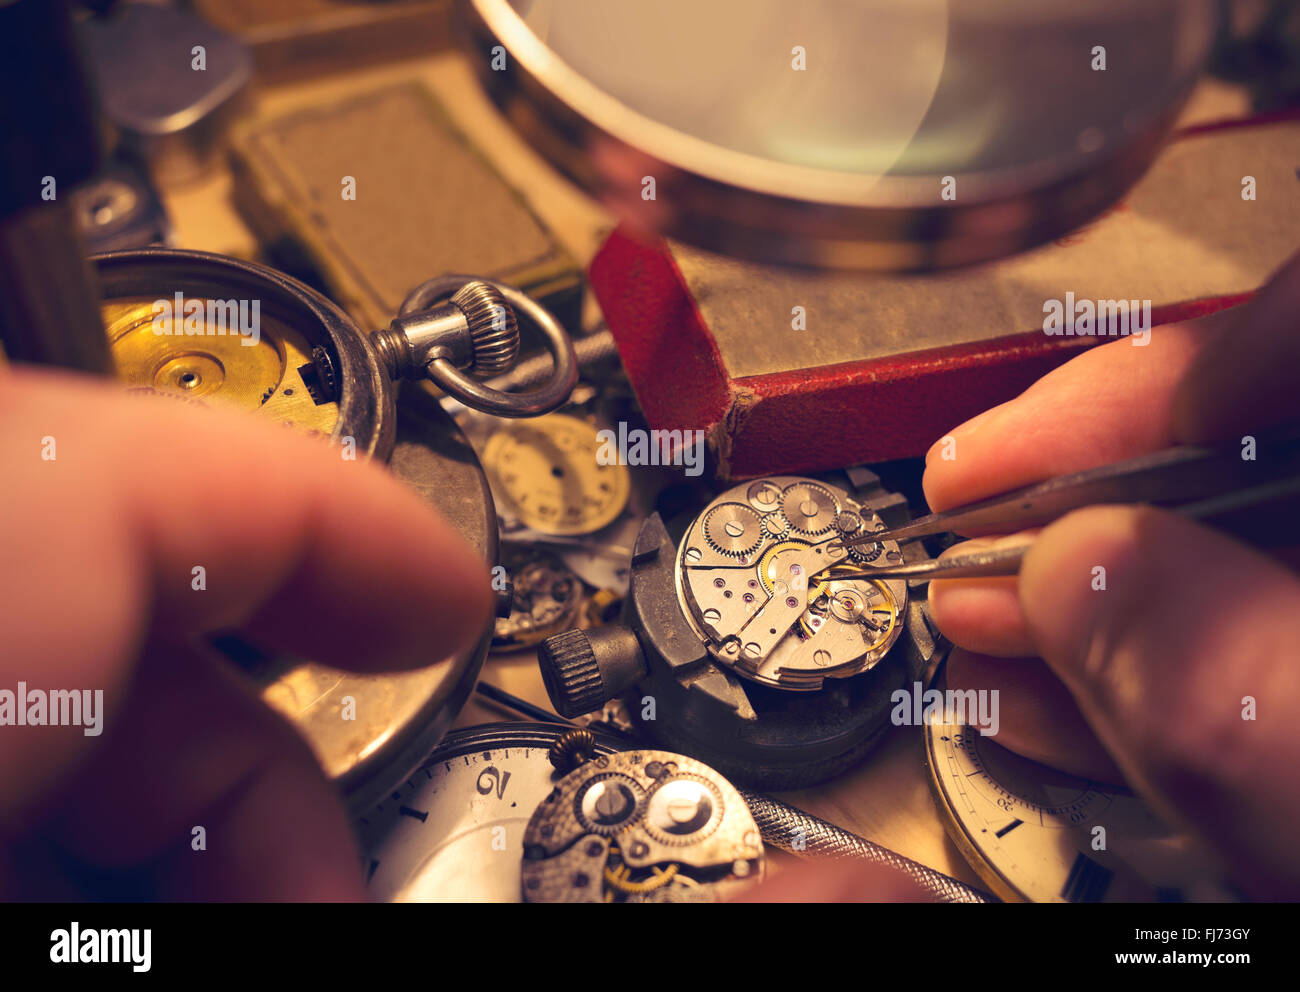 Orologiai artigianato. Un orologio maker la riparazione di un vintage orologio automatico. Foto Stock